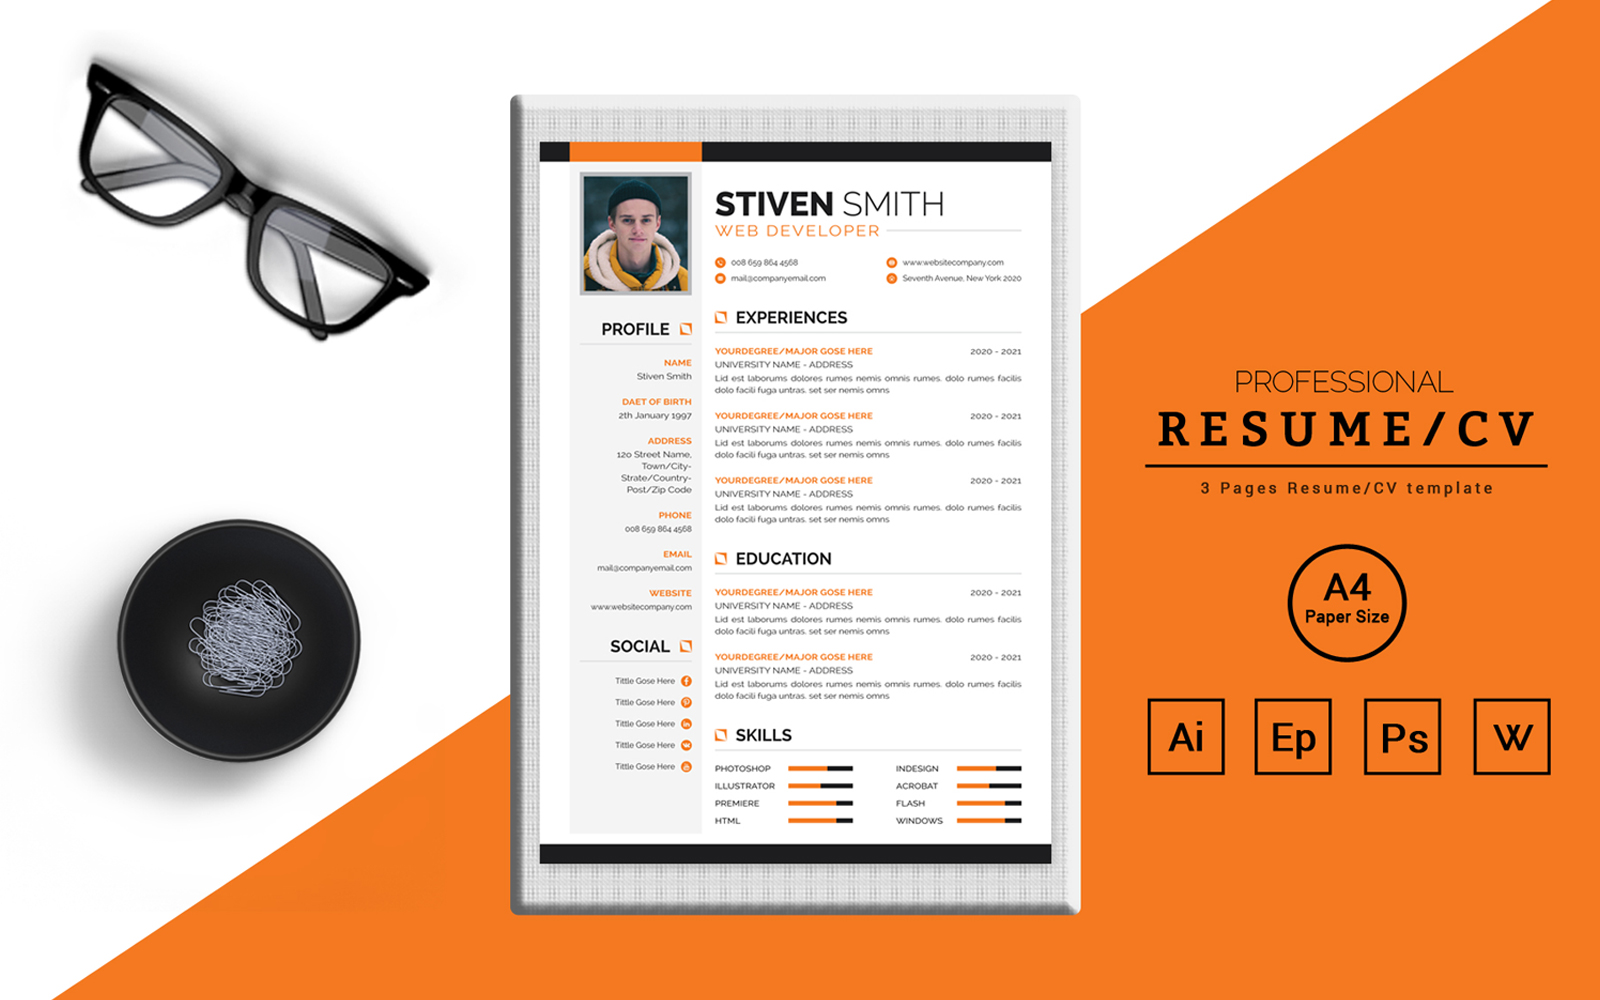 Stiven Smith – CV Design for a Web Developer Printable Resume Templates